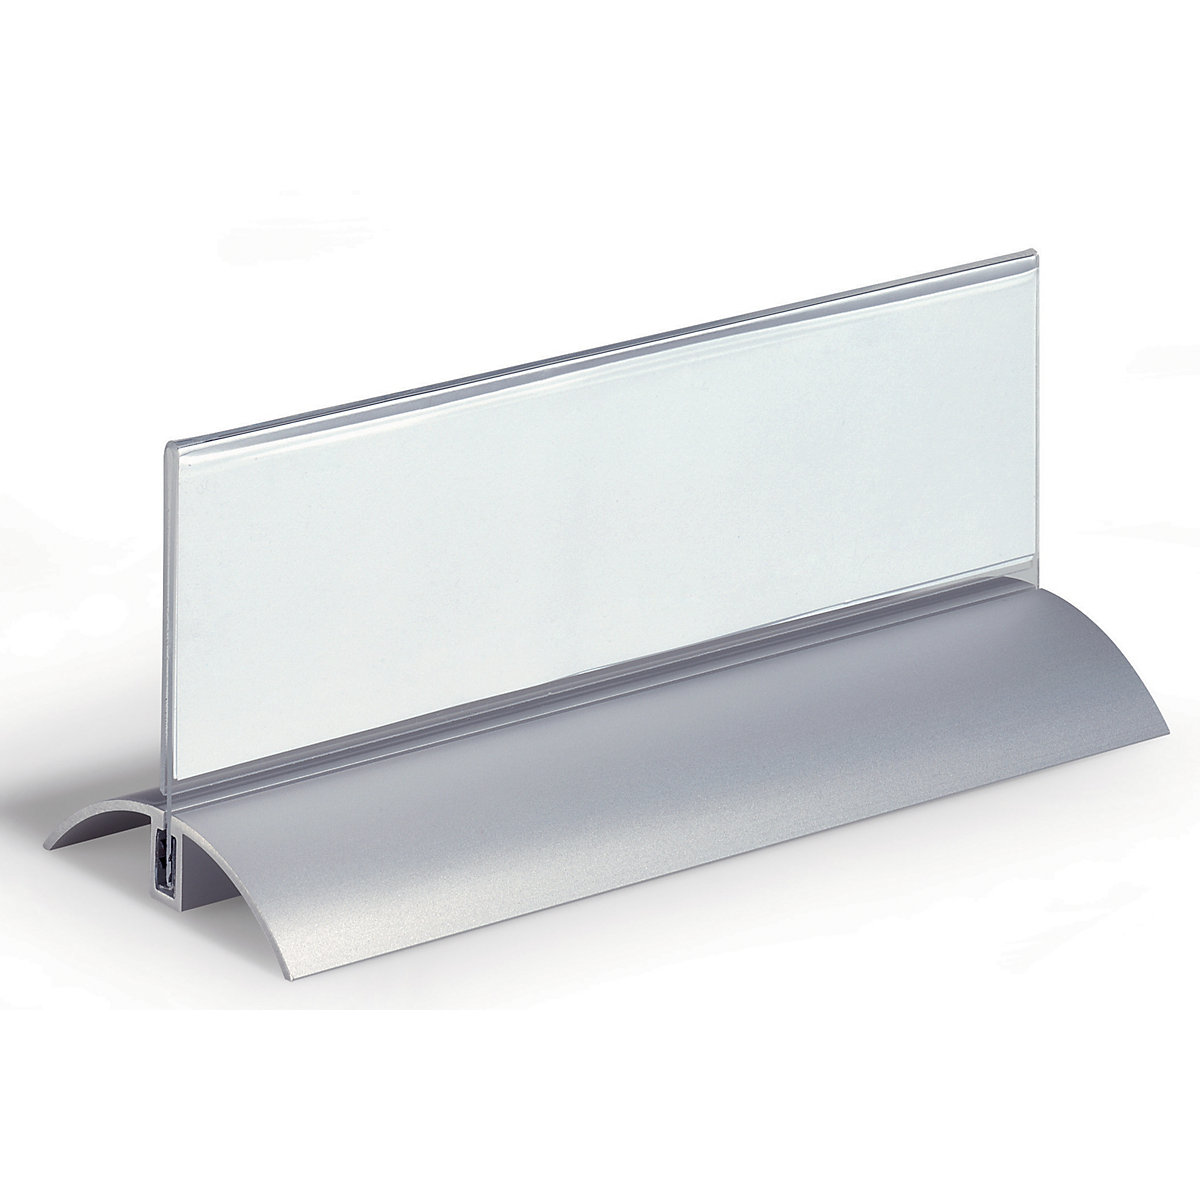 Identyfikator na stół, akryl z aluminiową podstawką - DURABLE